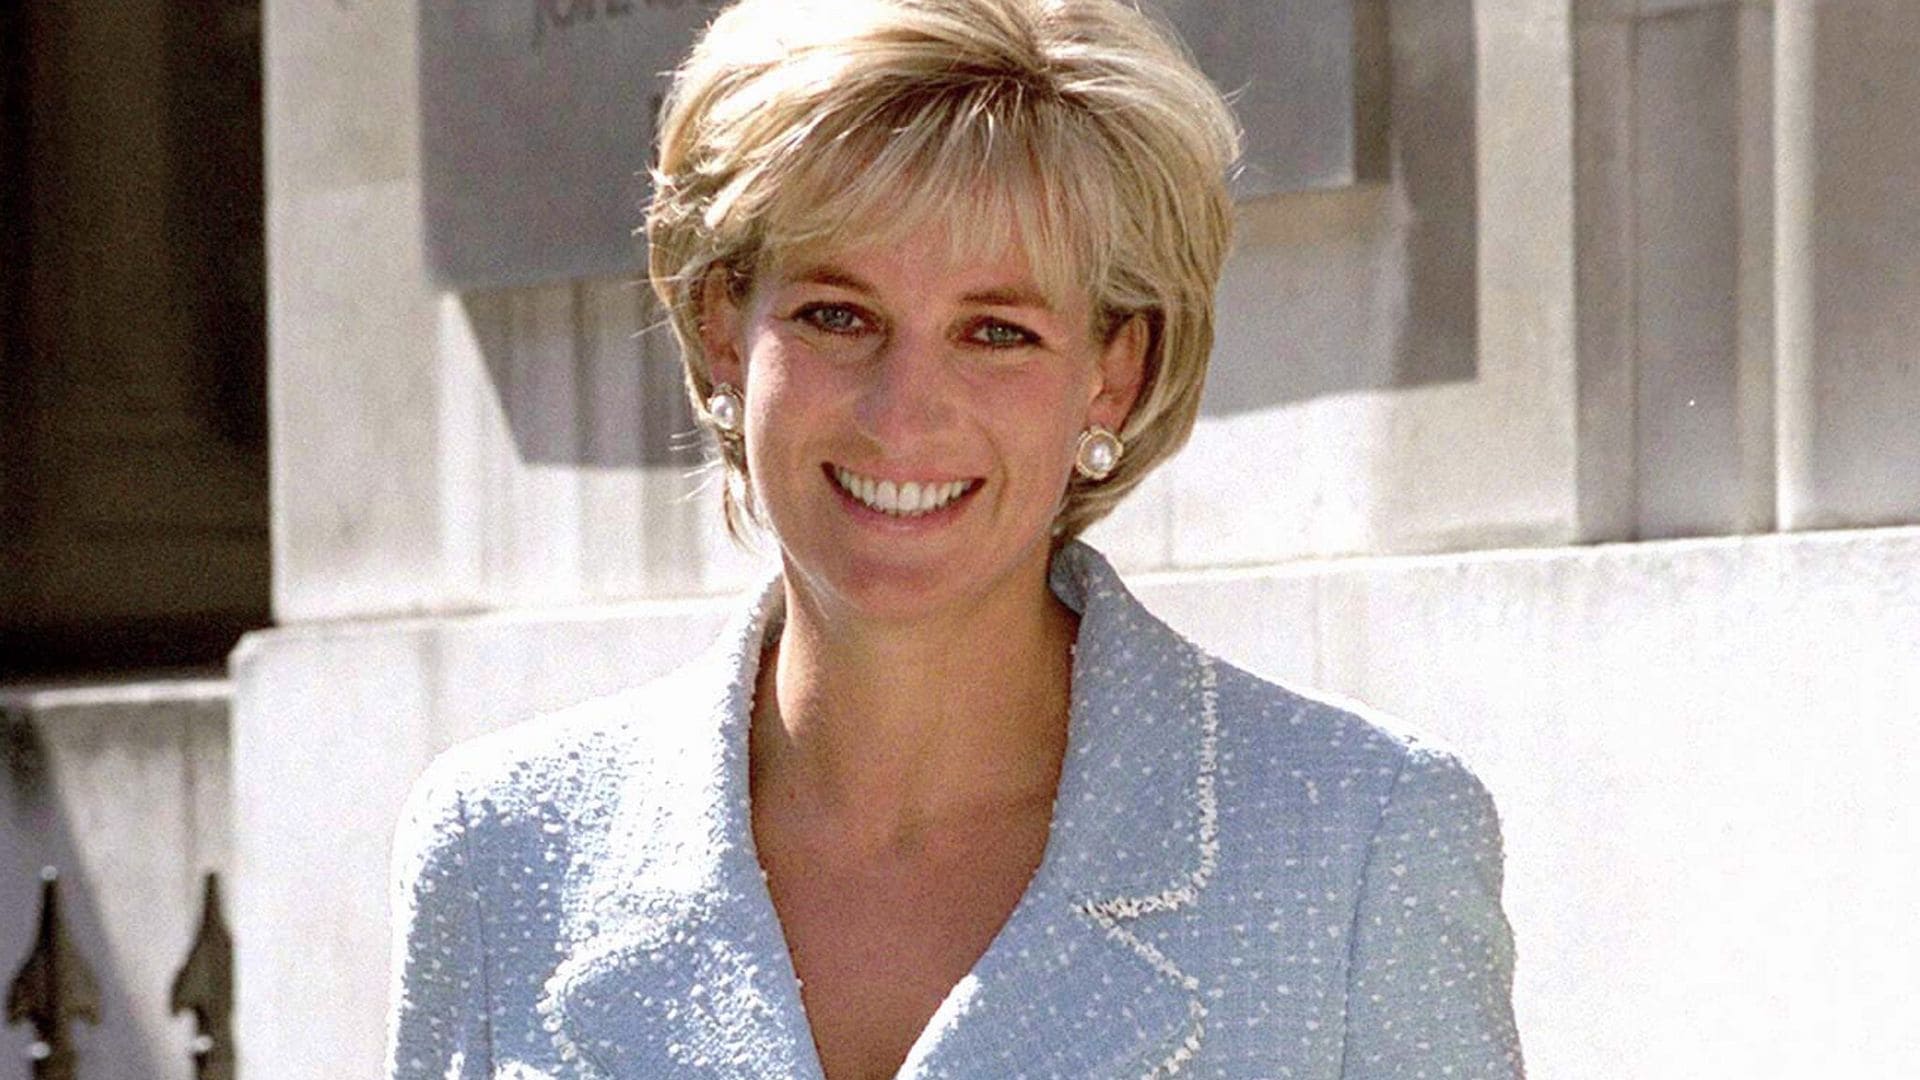 Develan estatua de la princesa Diana en el que hubiera sido su cumpleaños 60